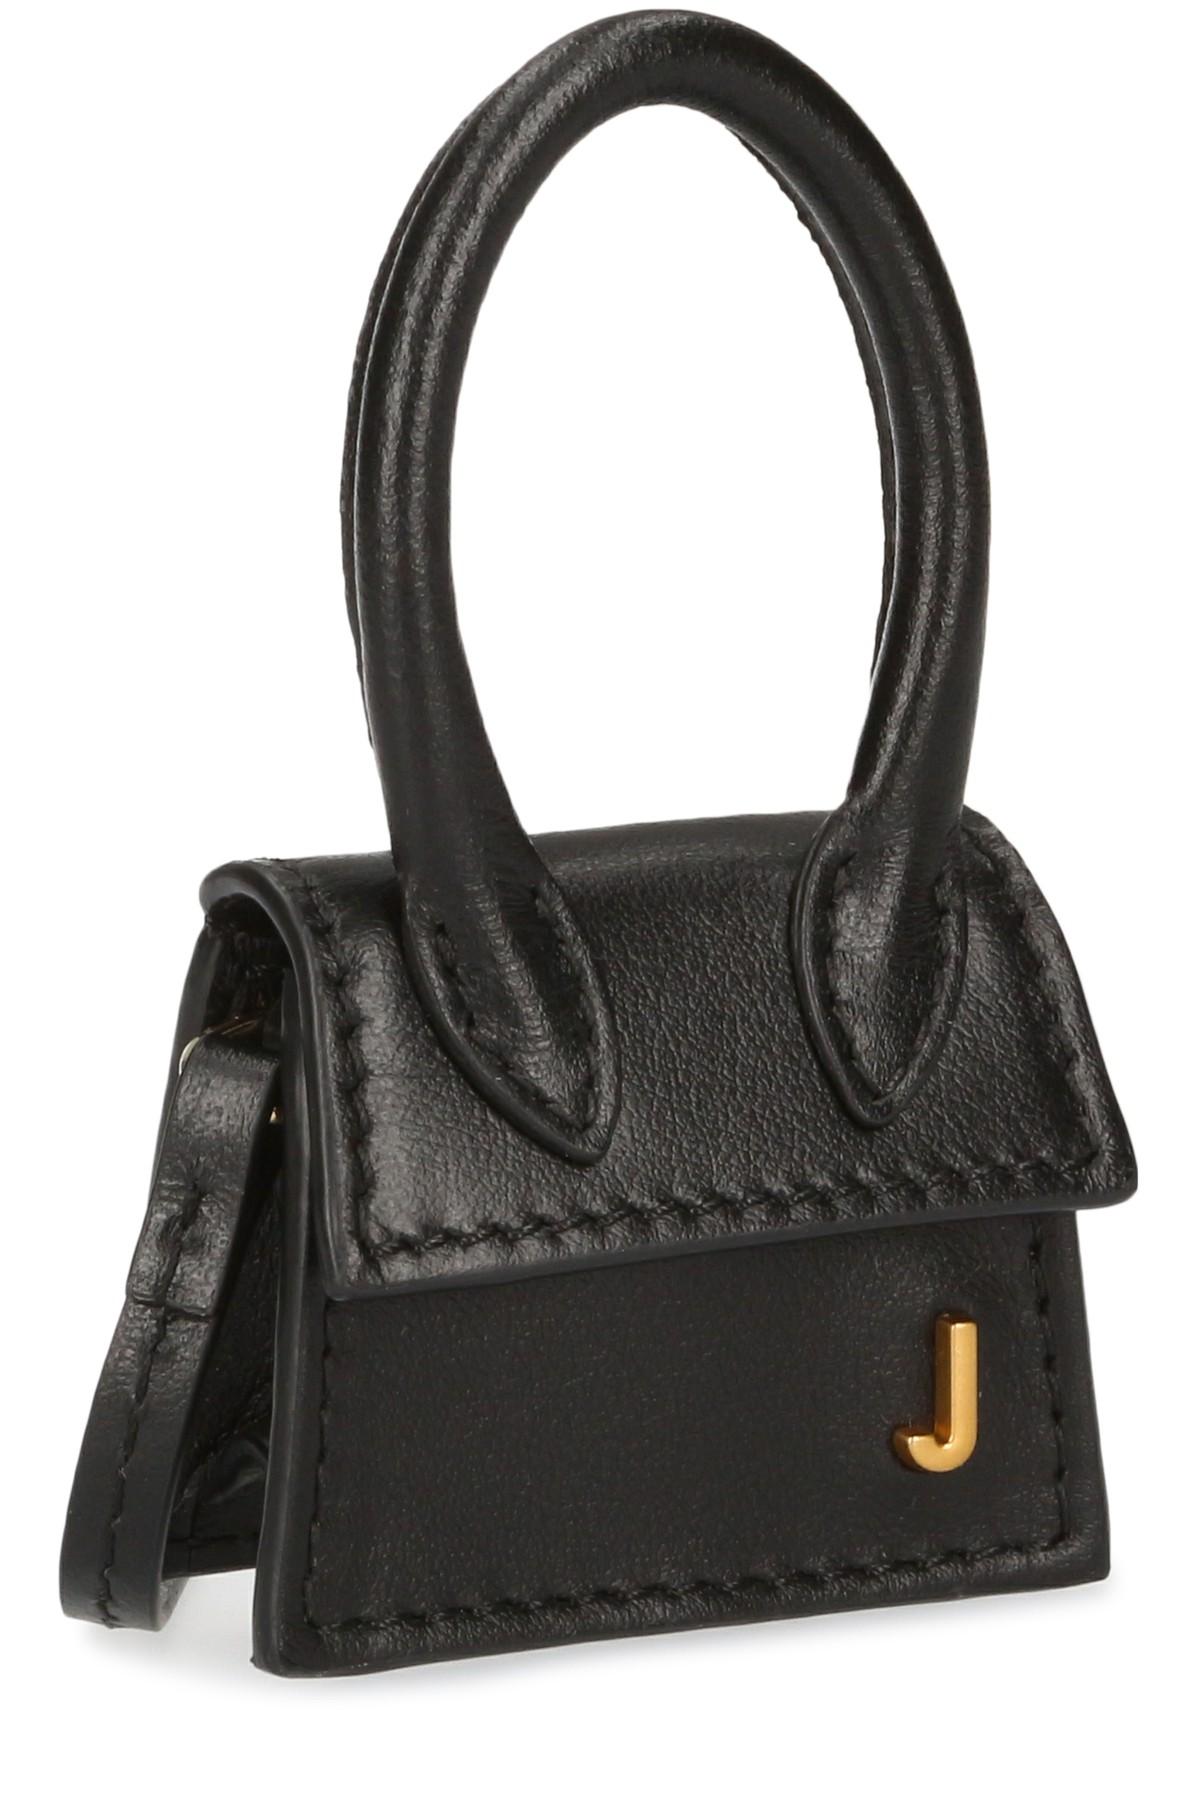 Jacquemus Le Petit Chiquito Mini Leather Bag in Black - Lyst